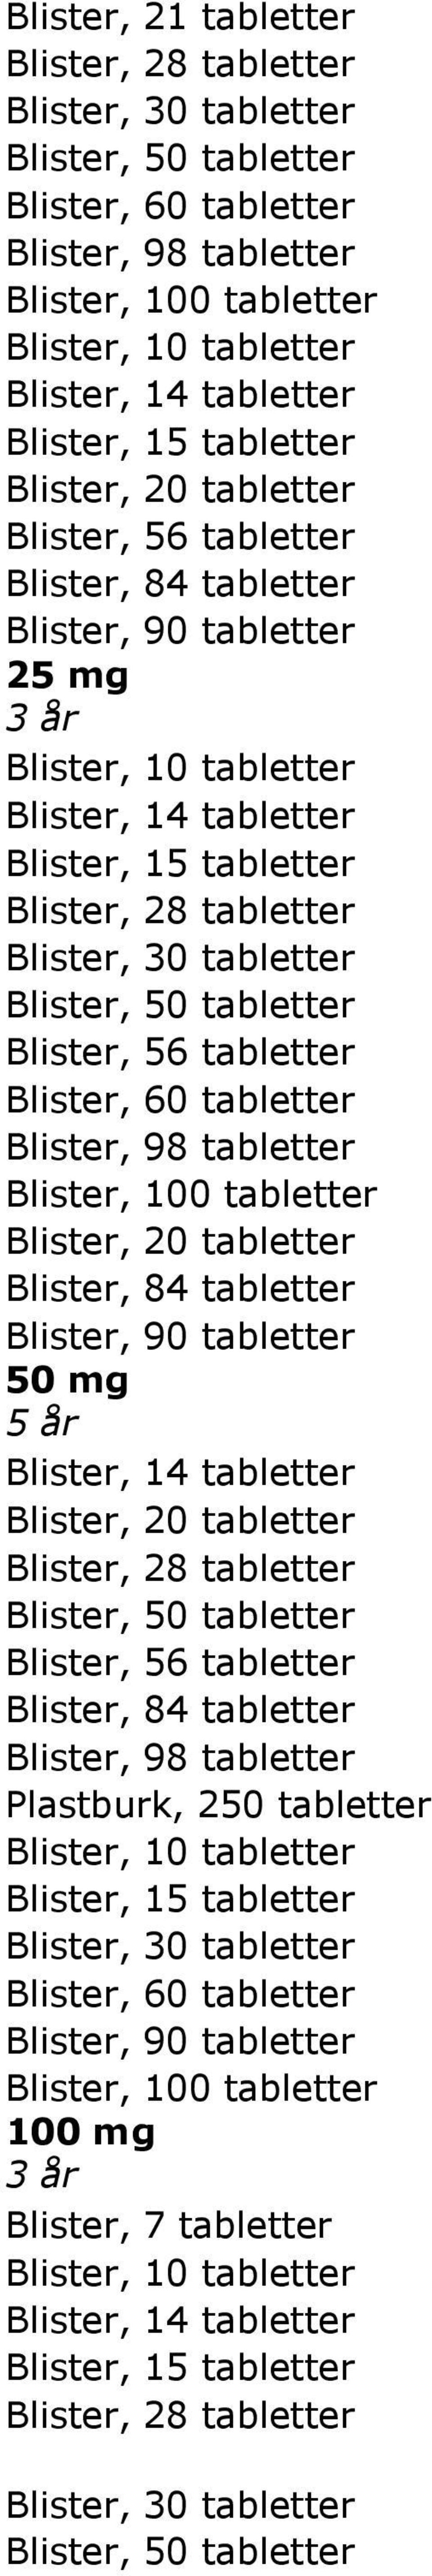 tabletter Blister, 60 tabletter Blister, 100 tabletter Blister, 20 tabletter Blister, 84 tabletter Blister, 90 tabletter 50 mg 5 år Blister, 14 tabletter Blister, 20 tabletter Blister, 50 tabletter